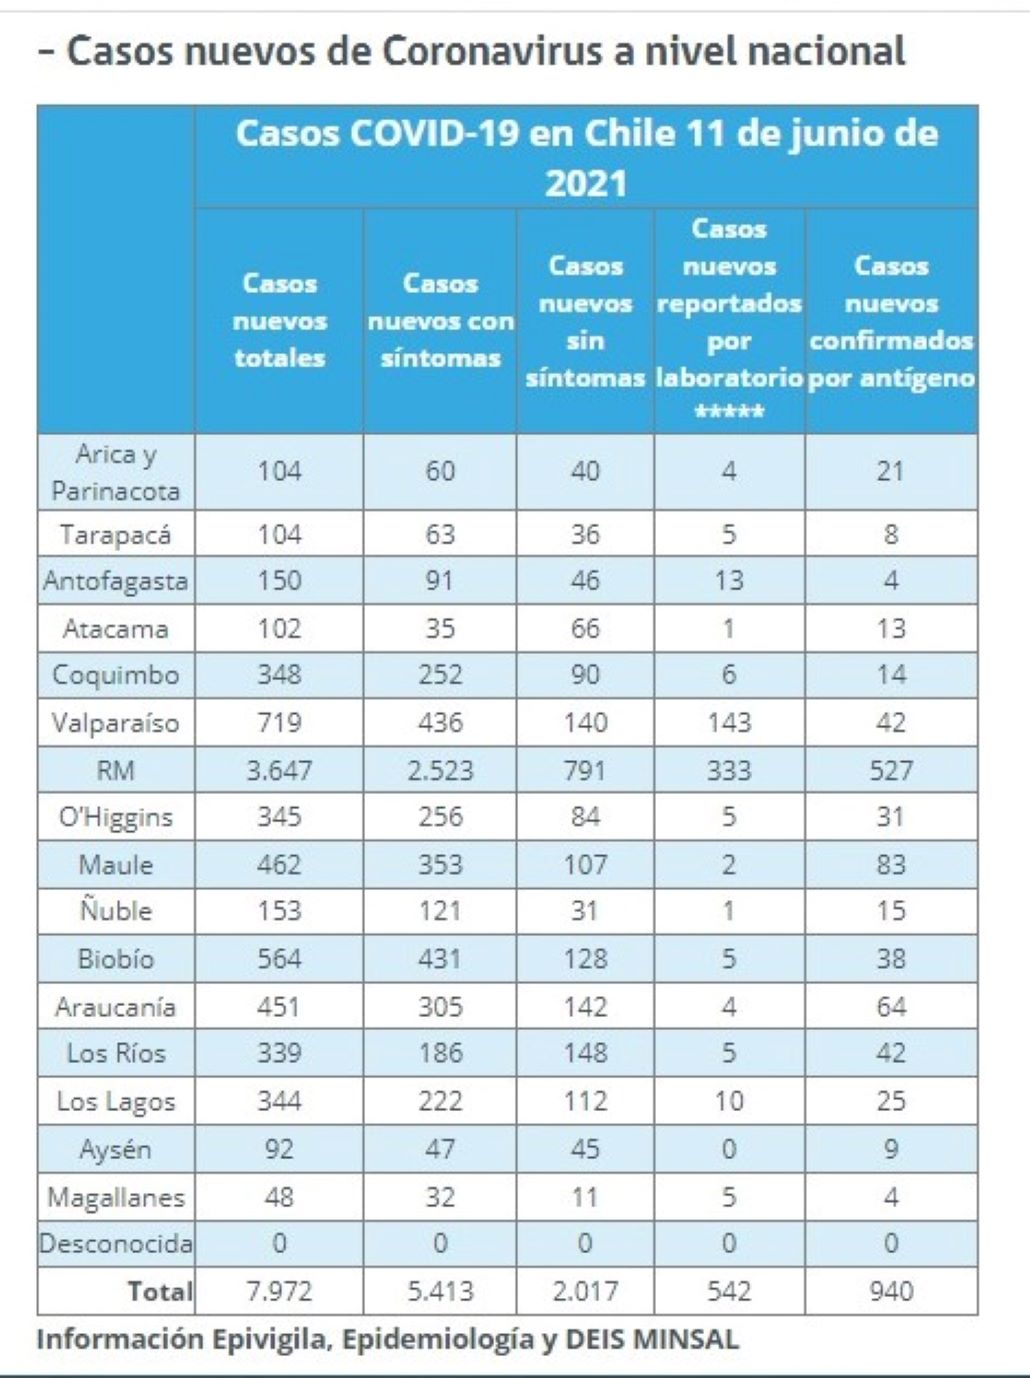 48 nuevos casos de covid en las recientes 24 horas se registran en Magallanes